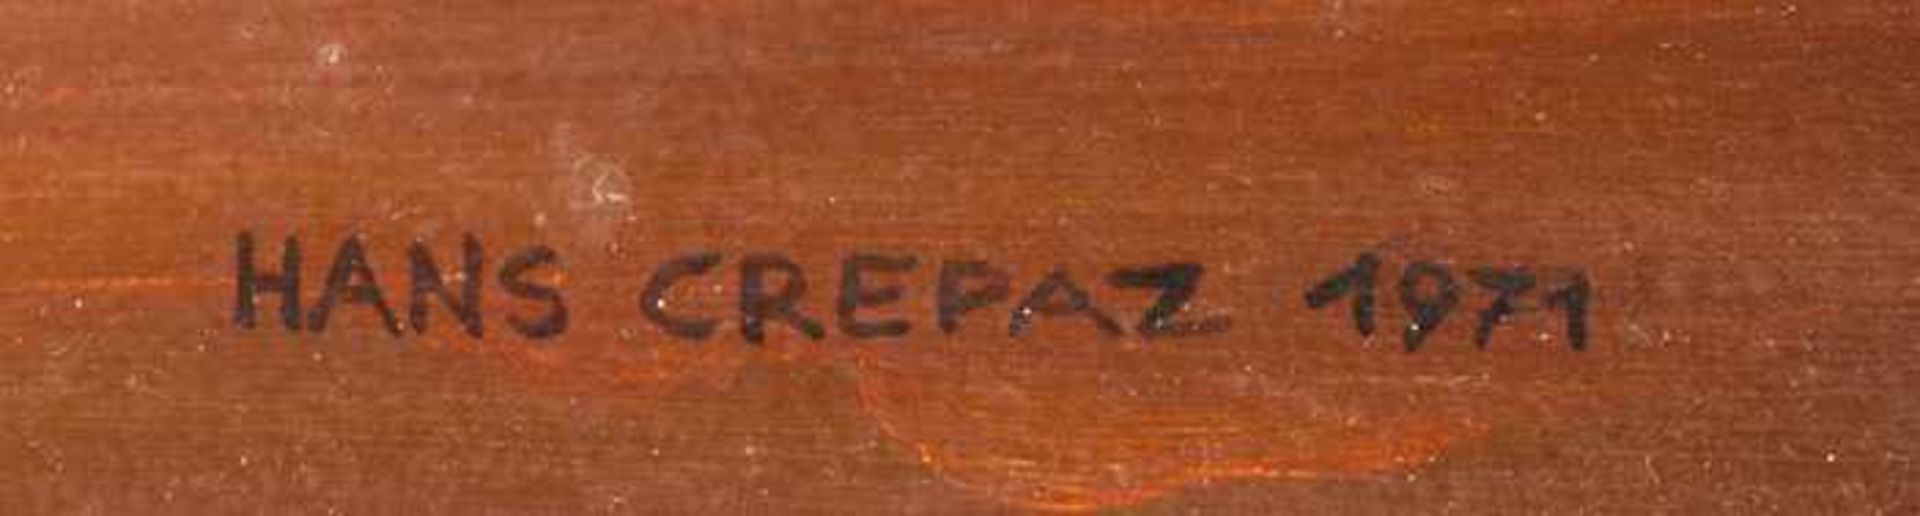 Crepaz, Hans Ohne Titel, 1971 Öl auf Platte Signiert und datiert rechts unten 60 x 80 cm gerahmt - Bild 3 aus 3